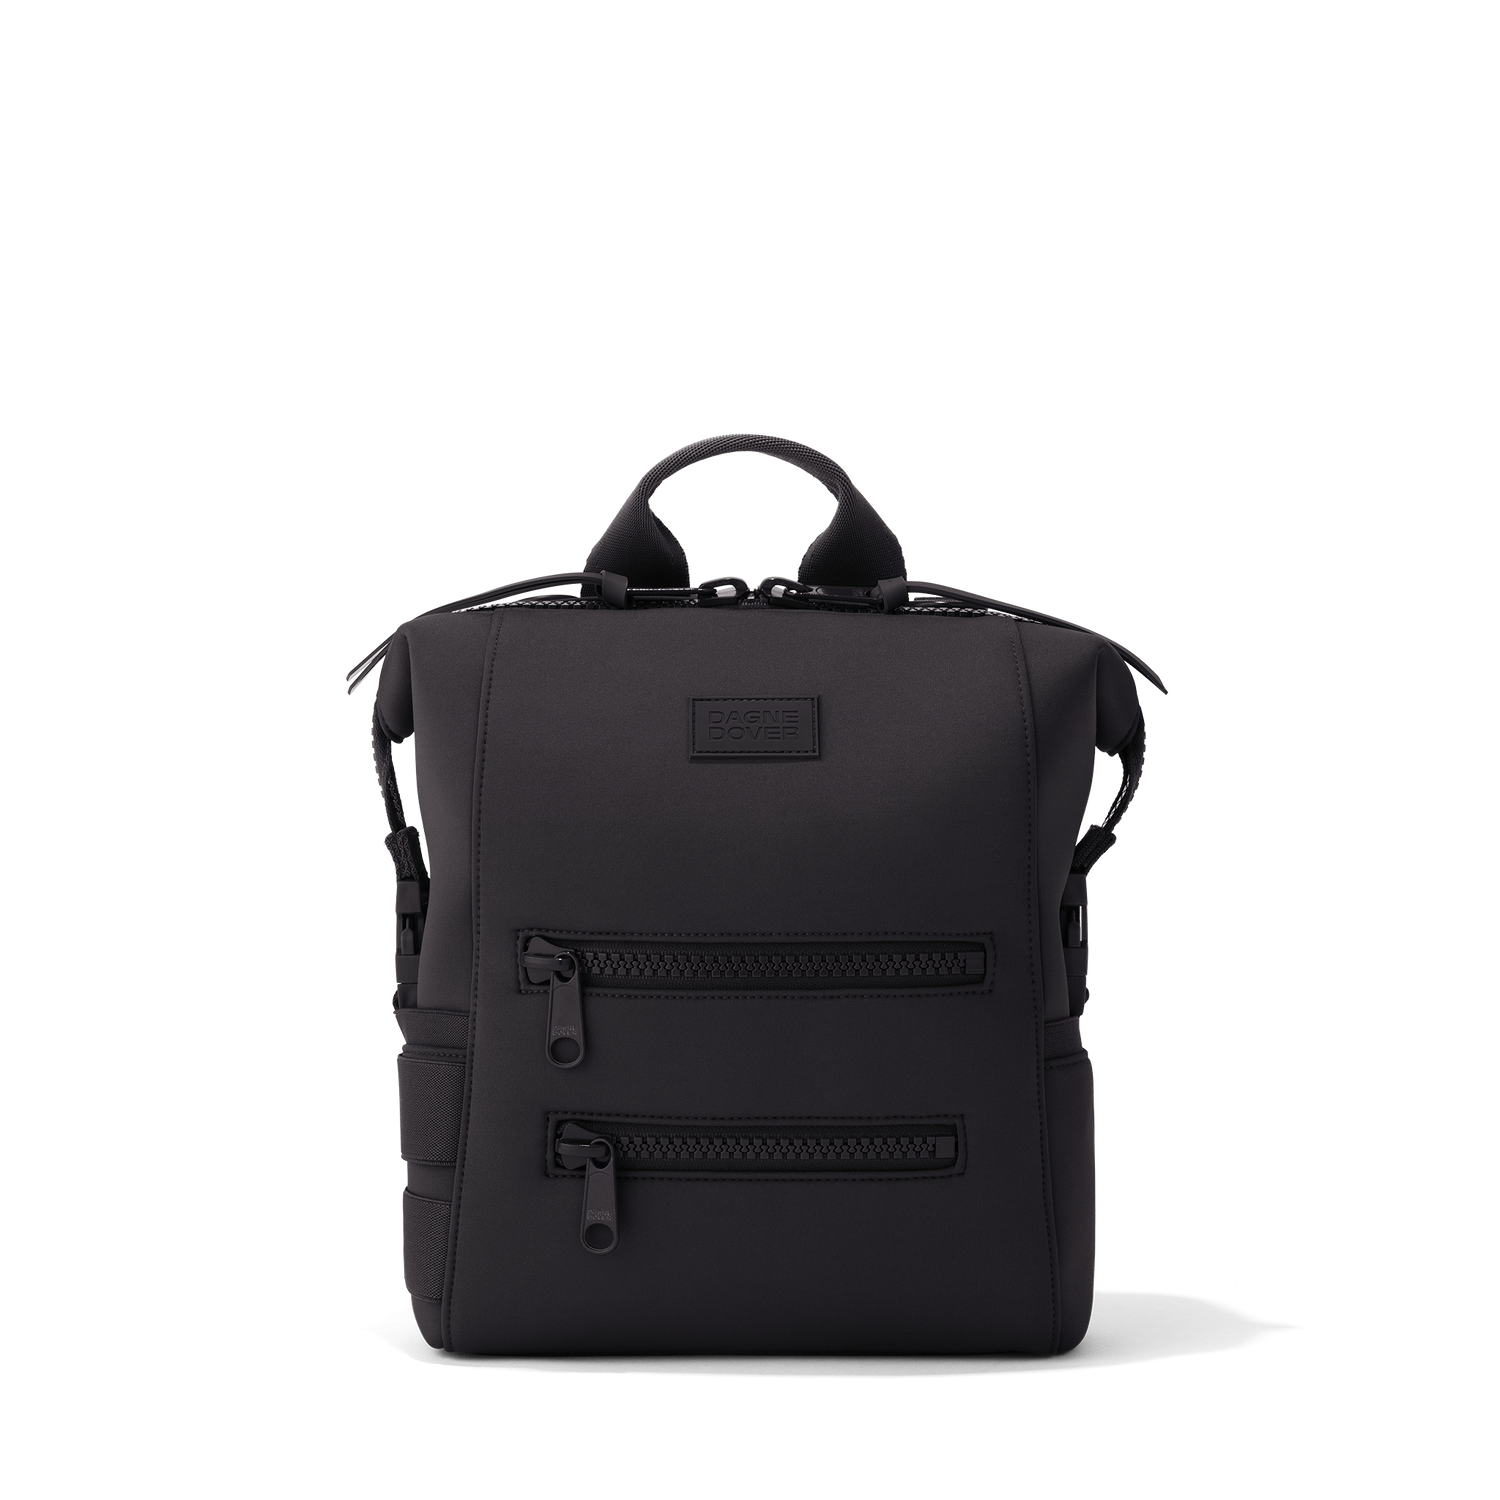 dagne dover black backpack